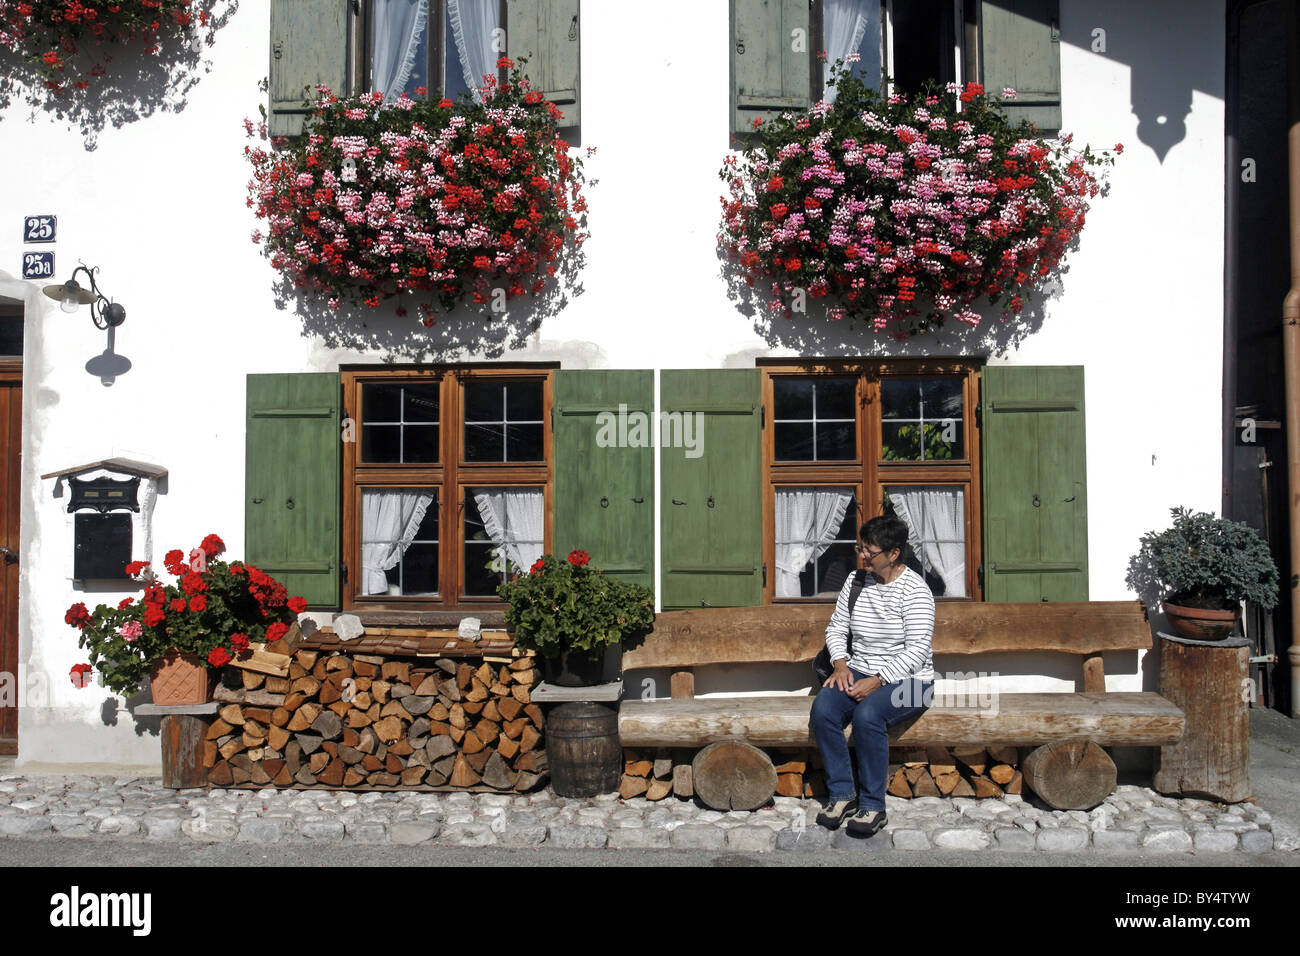 Deutschland Bayern Garmisch-Partenkirchen Fruhling Strasse verziert bayerischen Gebäude mit Balkonen und Blumen Architektur Stockfoto